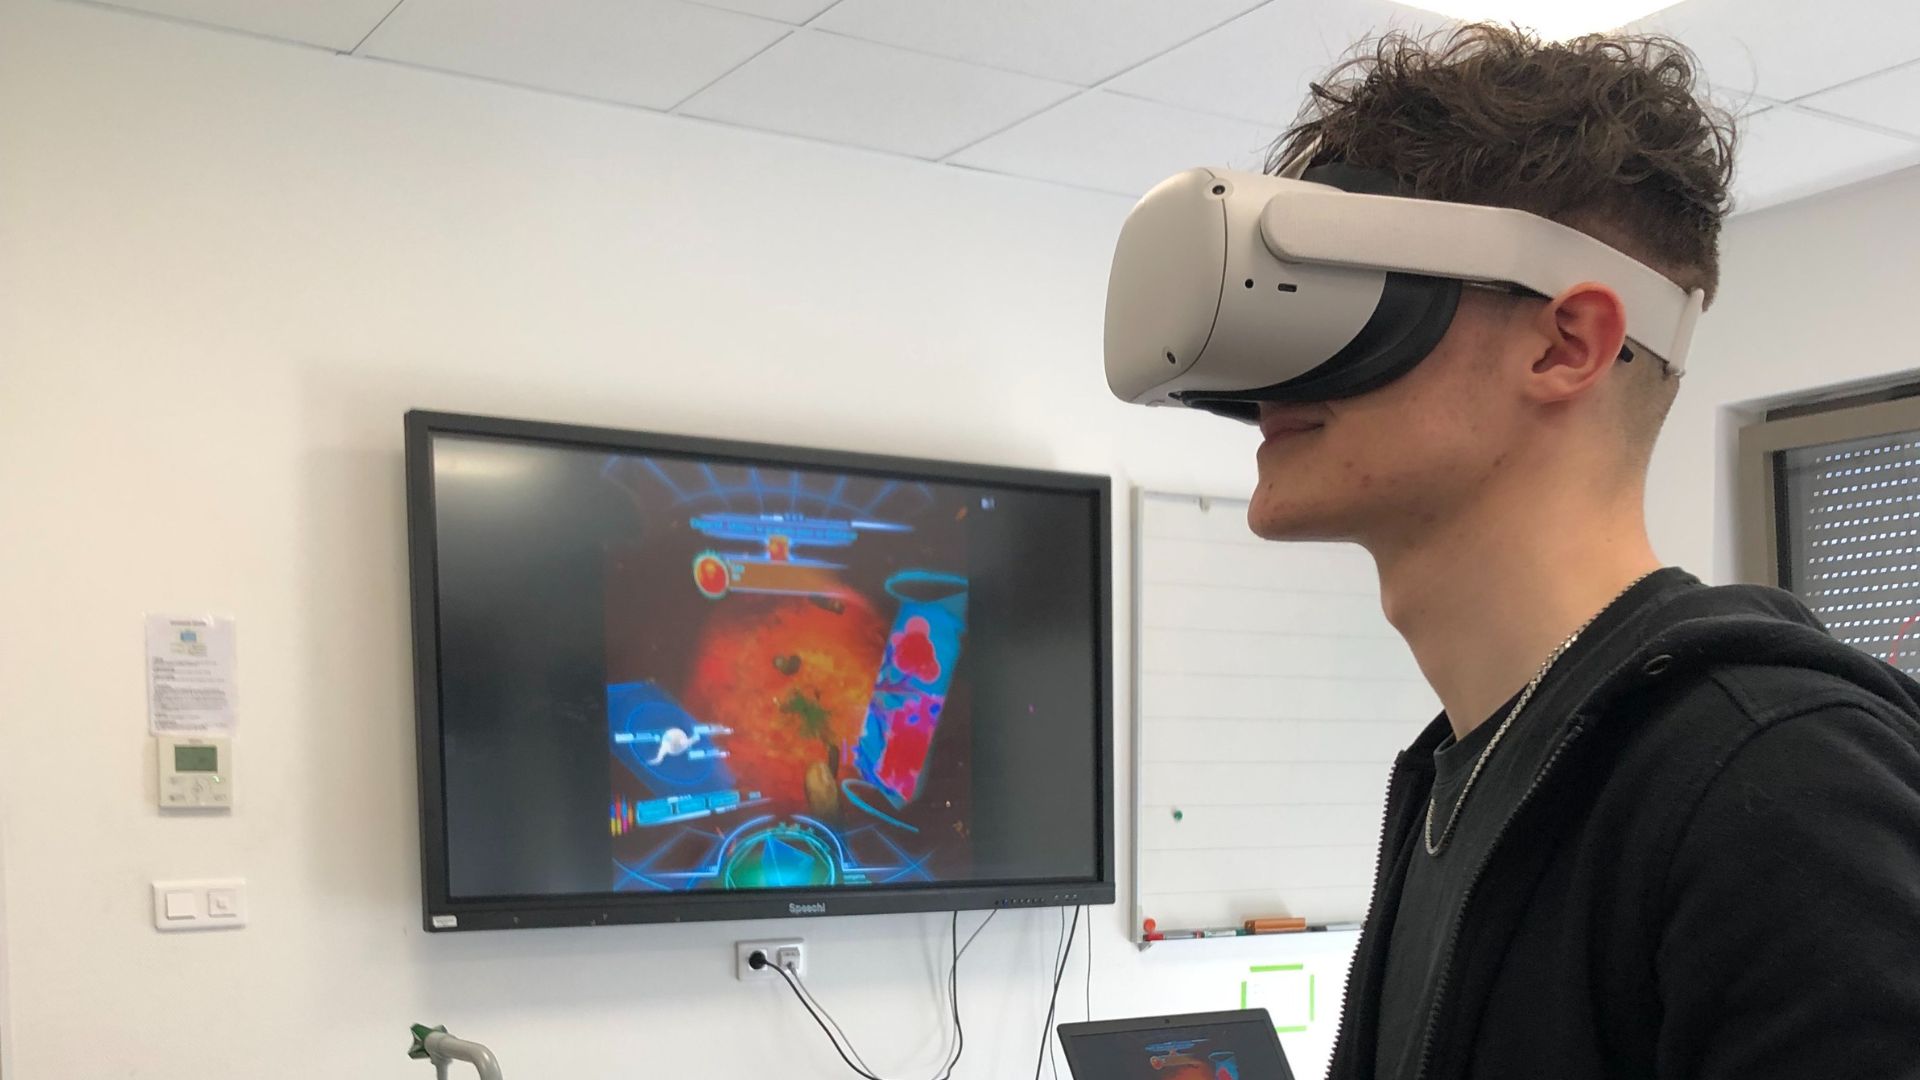 À votre santé - Un jeune avec un casque de réalité virtuelle joue avec un retour sur un écran plat.